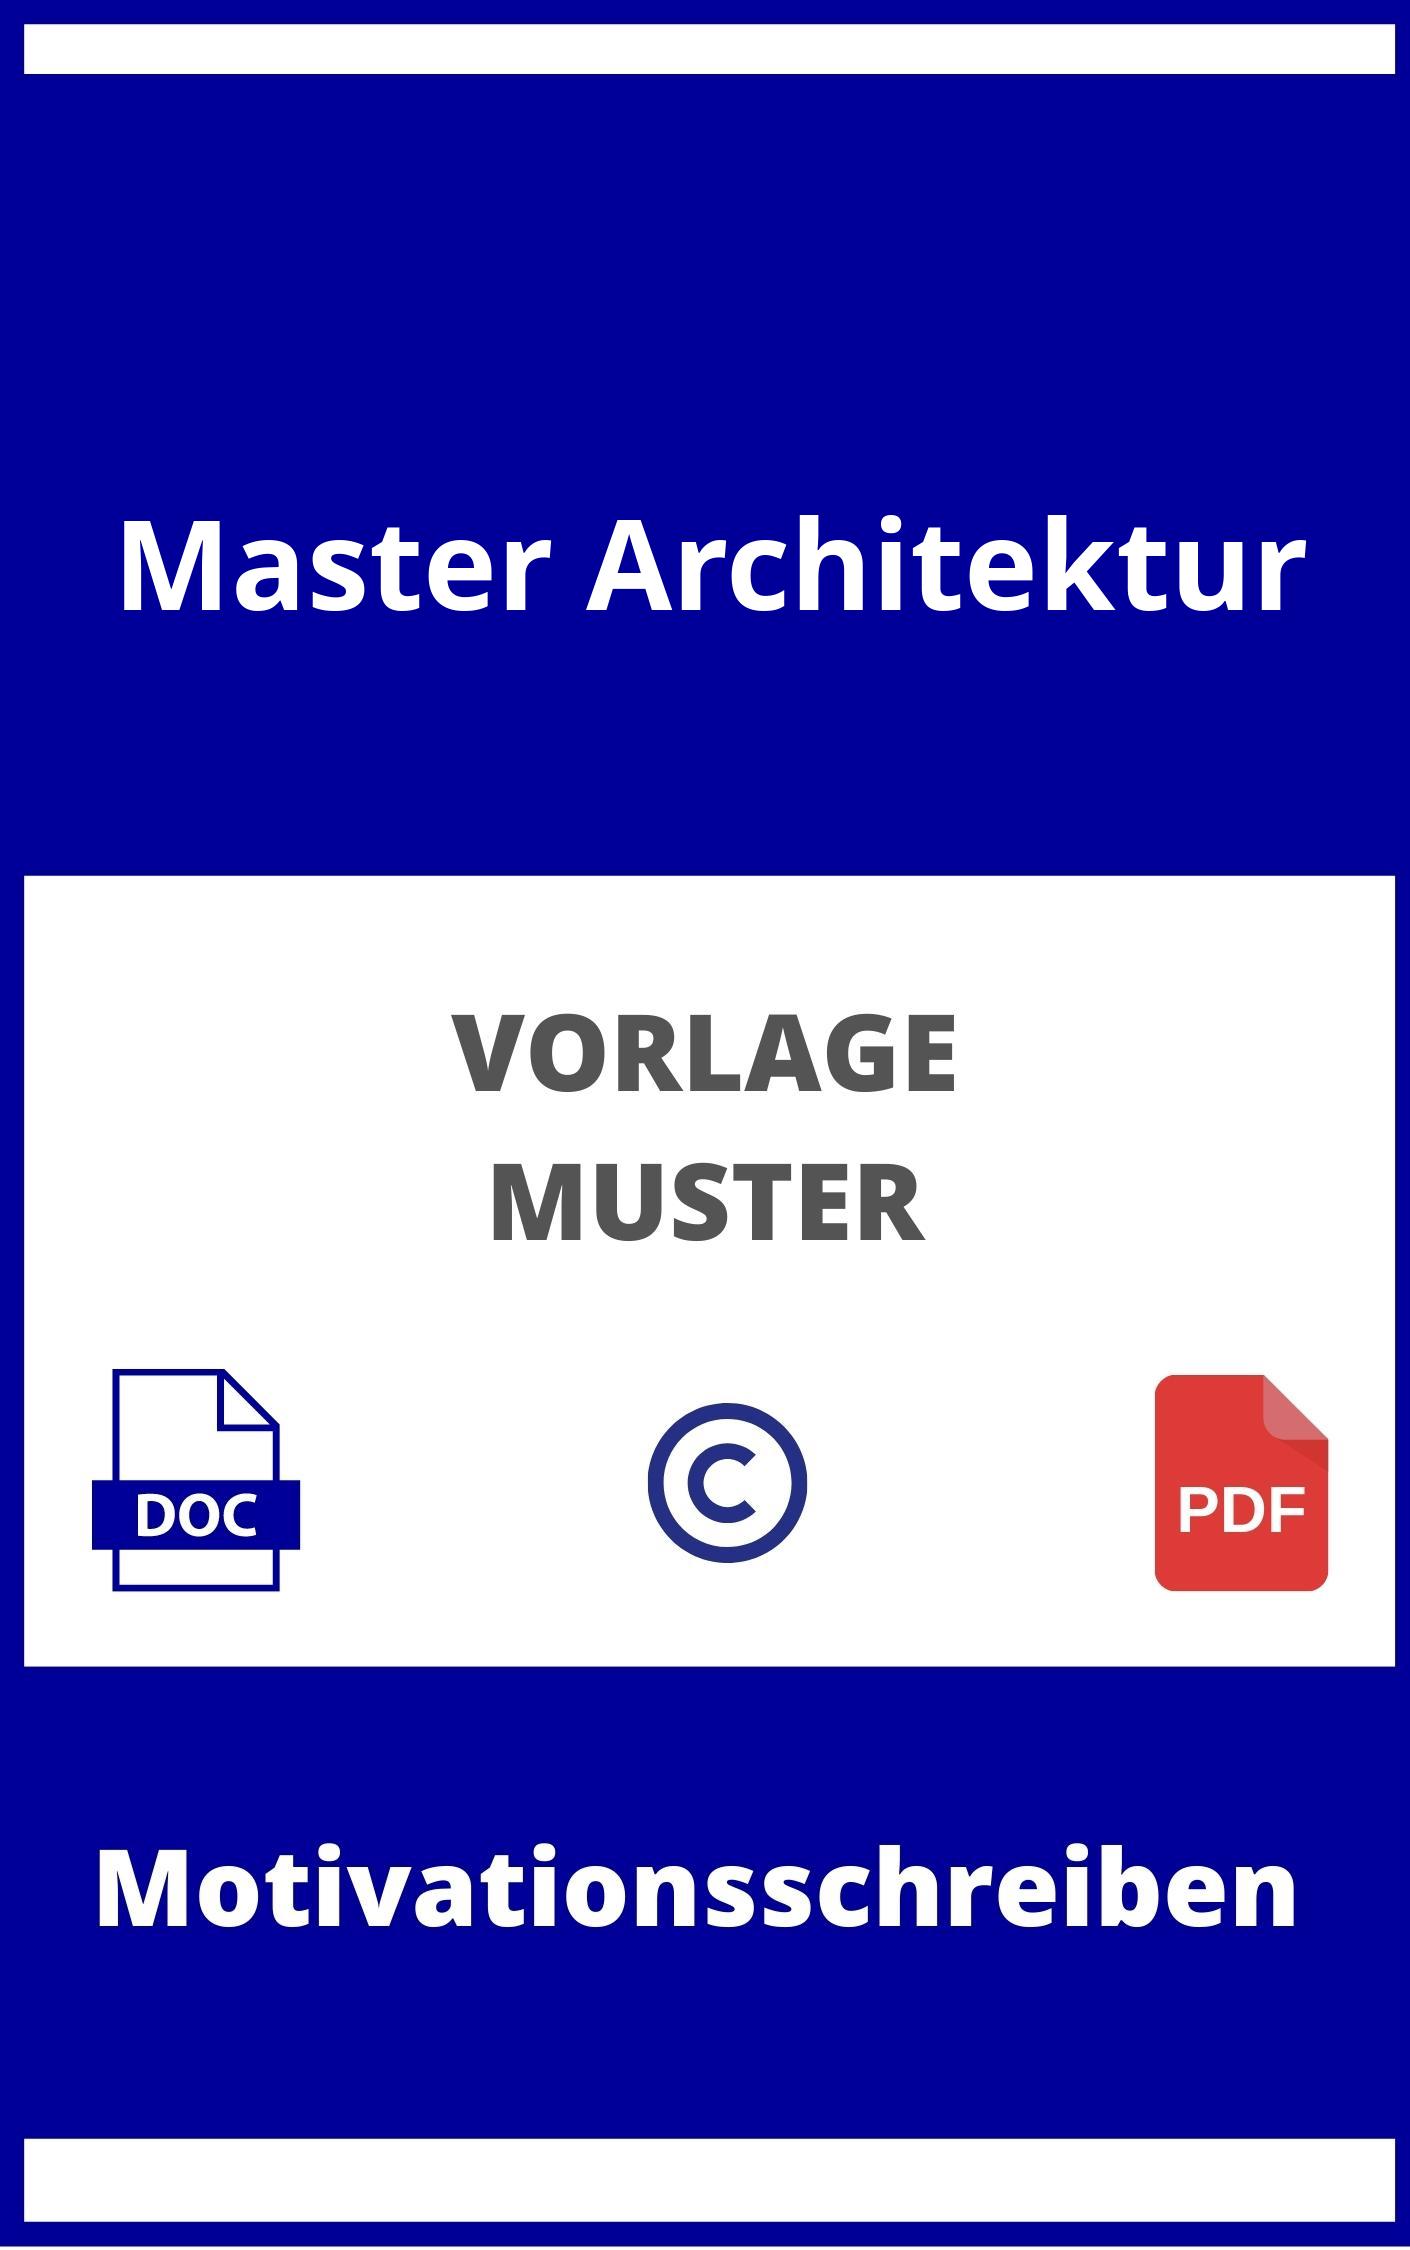 Motivationsschreiben Master Architektur